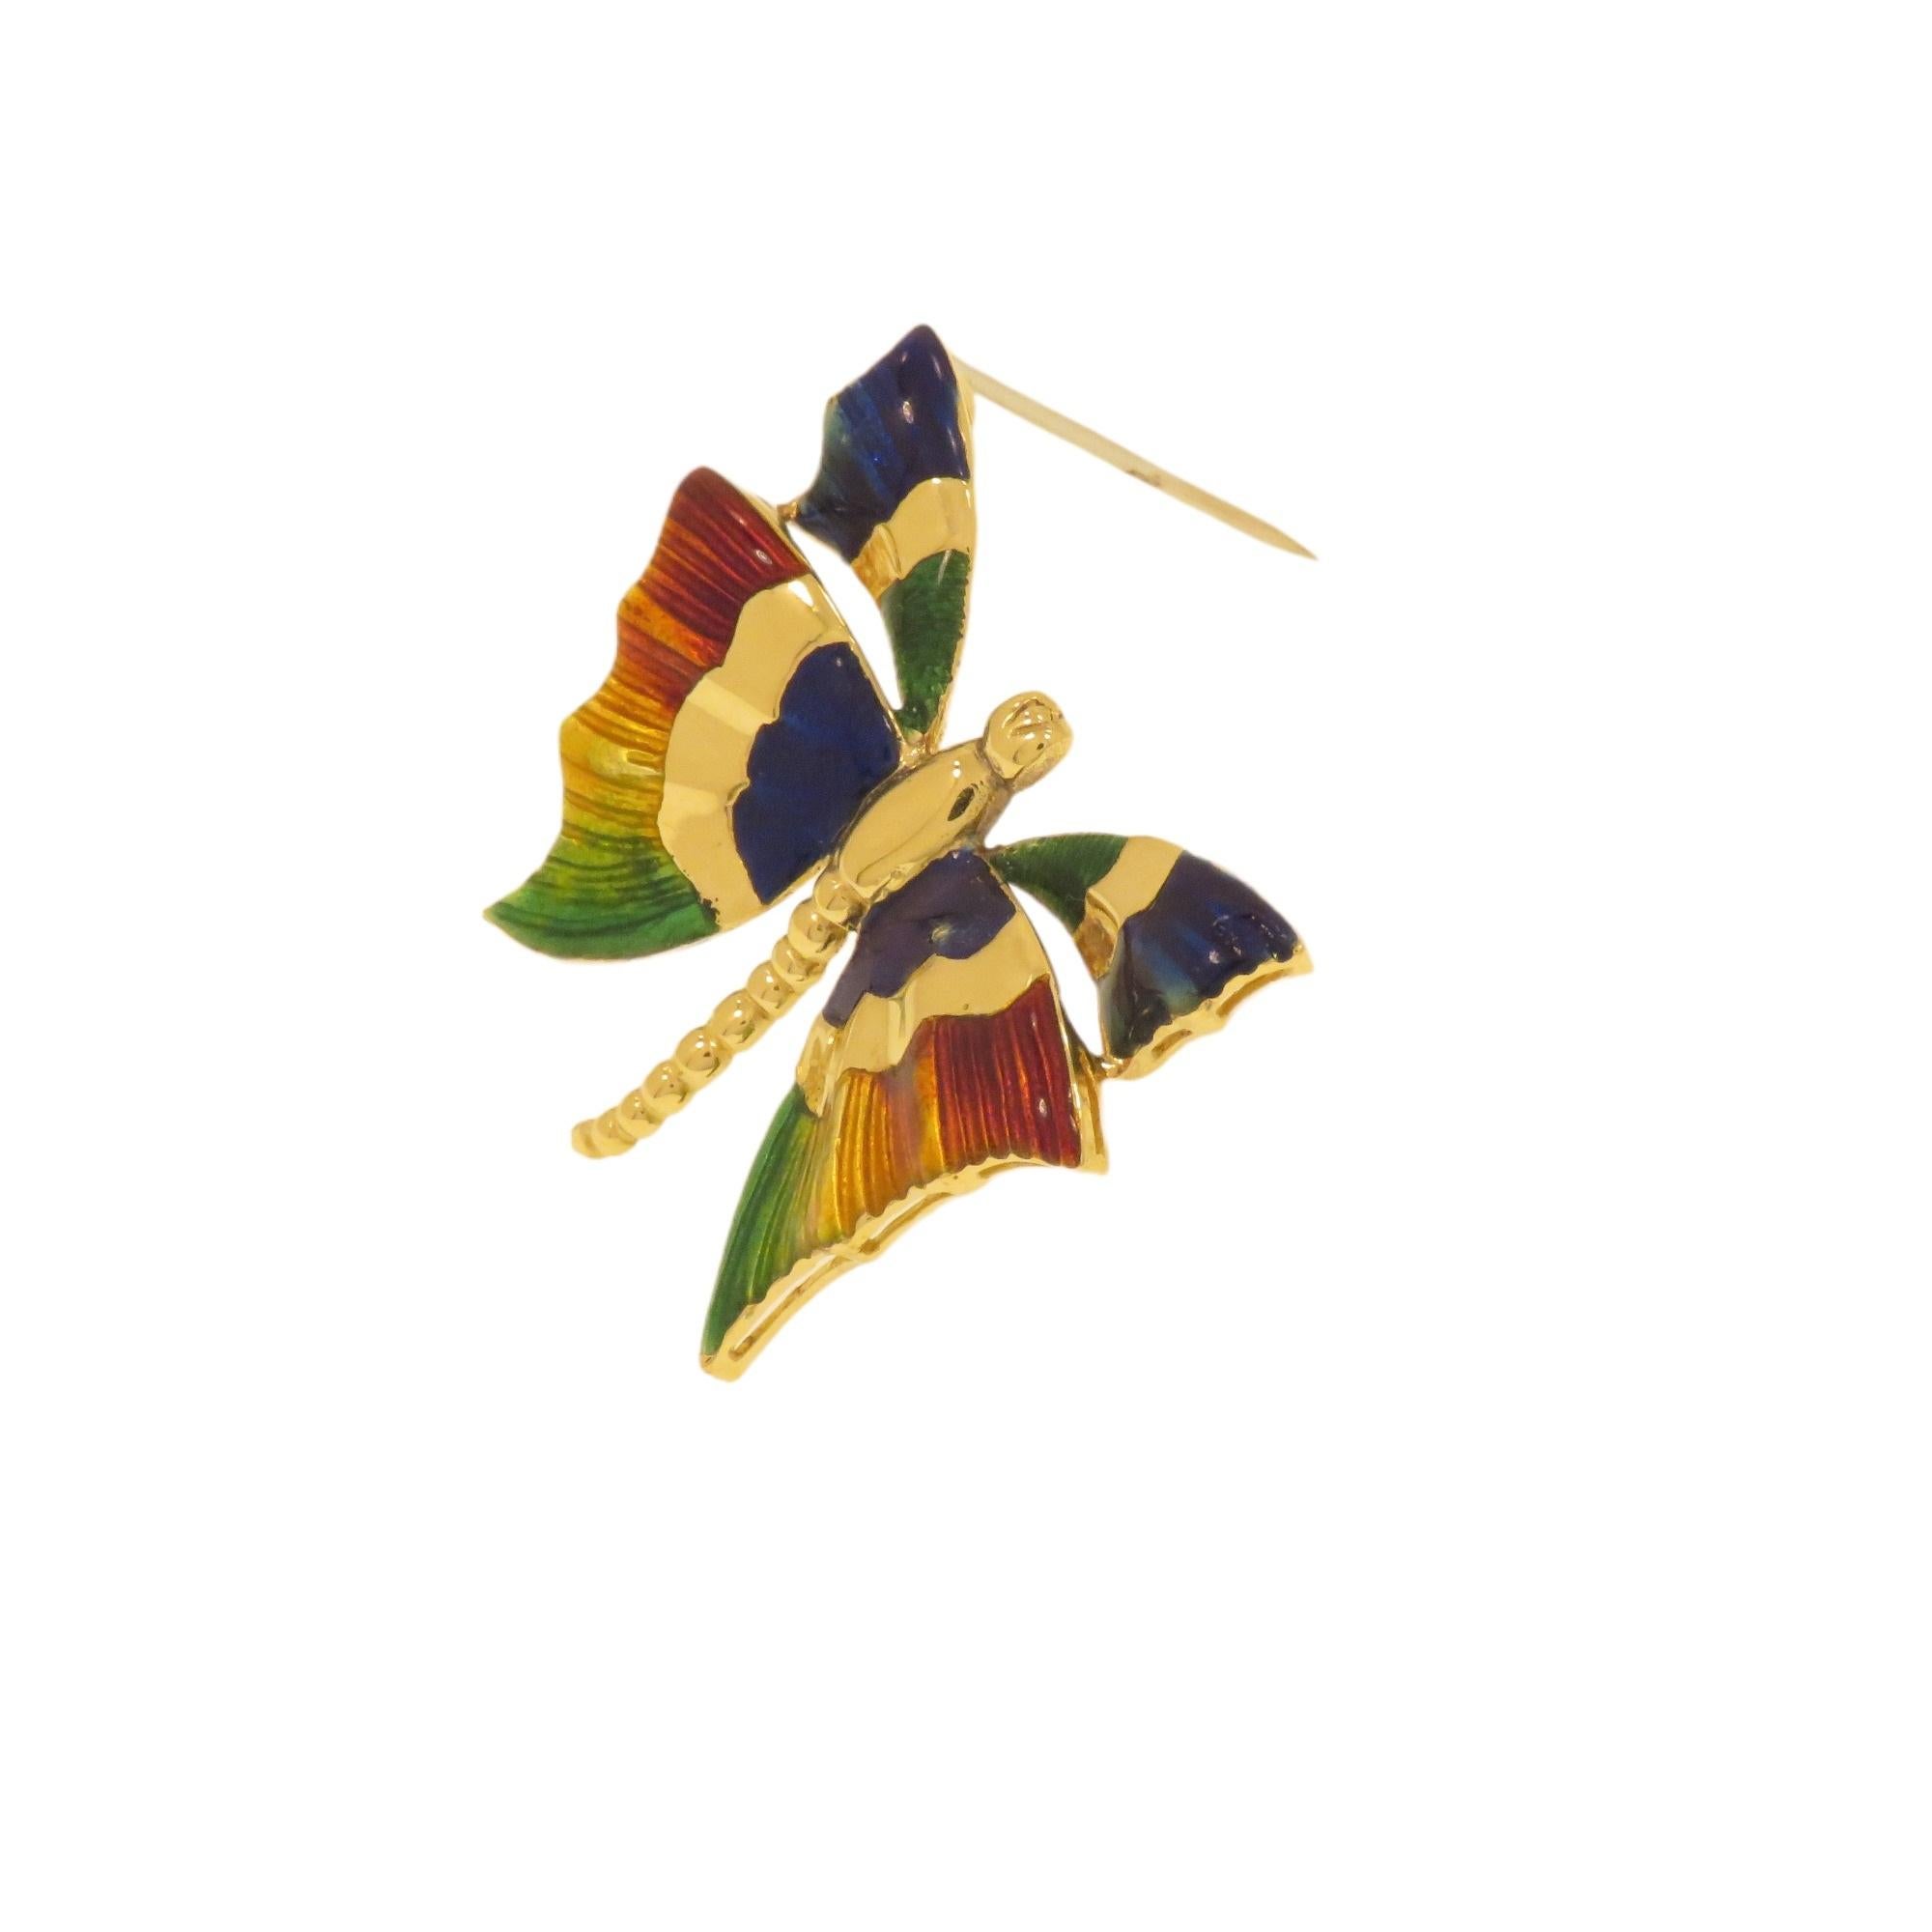 Elegante Spille d'epoca a forma di farfalla realizzata in oro giallo 18 carati. Le ali sono smaltate a fuoco in più colori. Realizzata a mano in Italia nel 1970 circa. Die Abmessungen der Spule betragen 38x32 mm / 1,496x1,259 Zoll und die Pesa 11,6